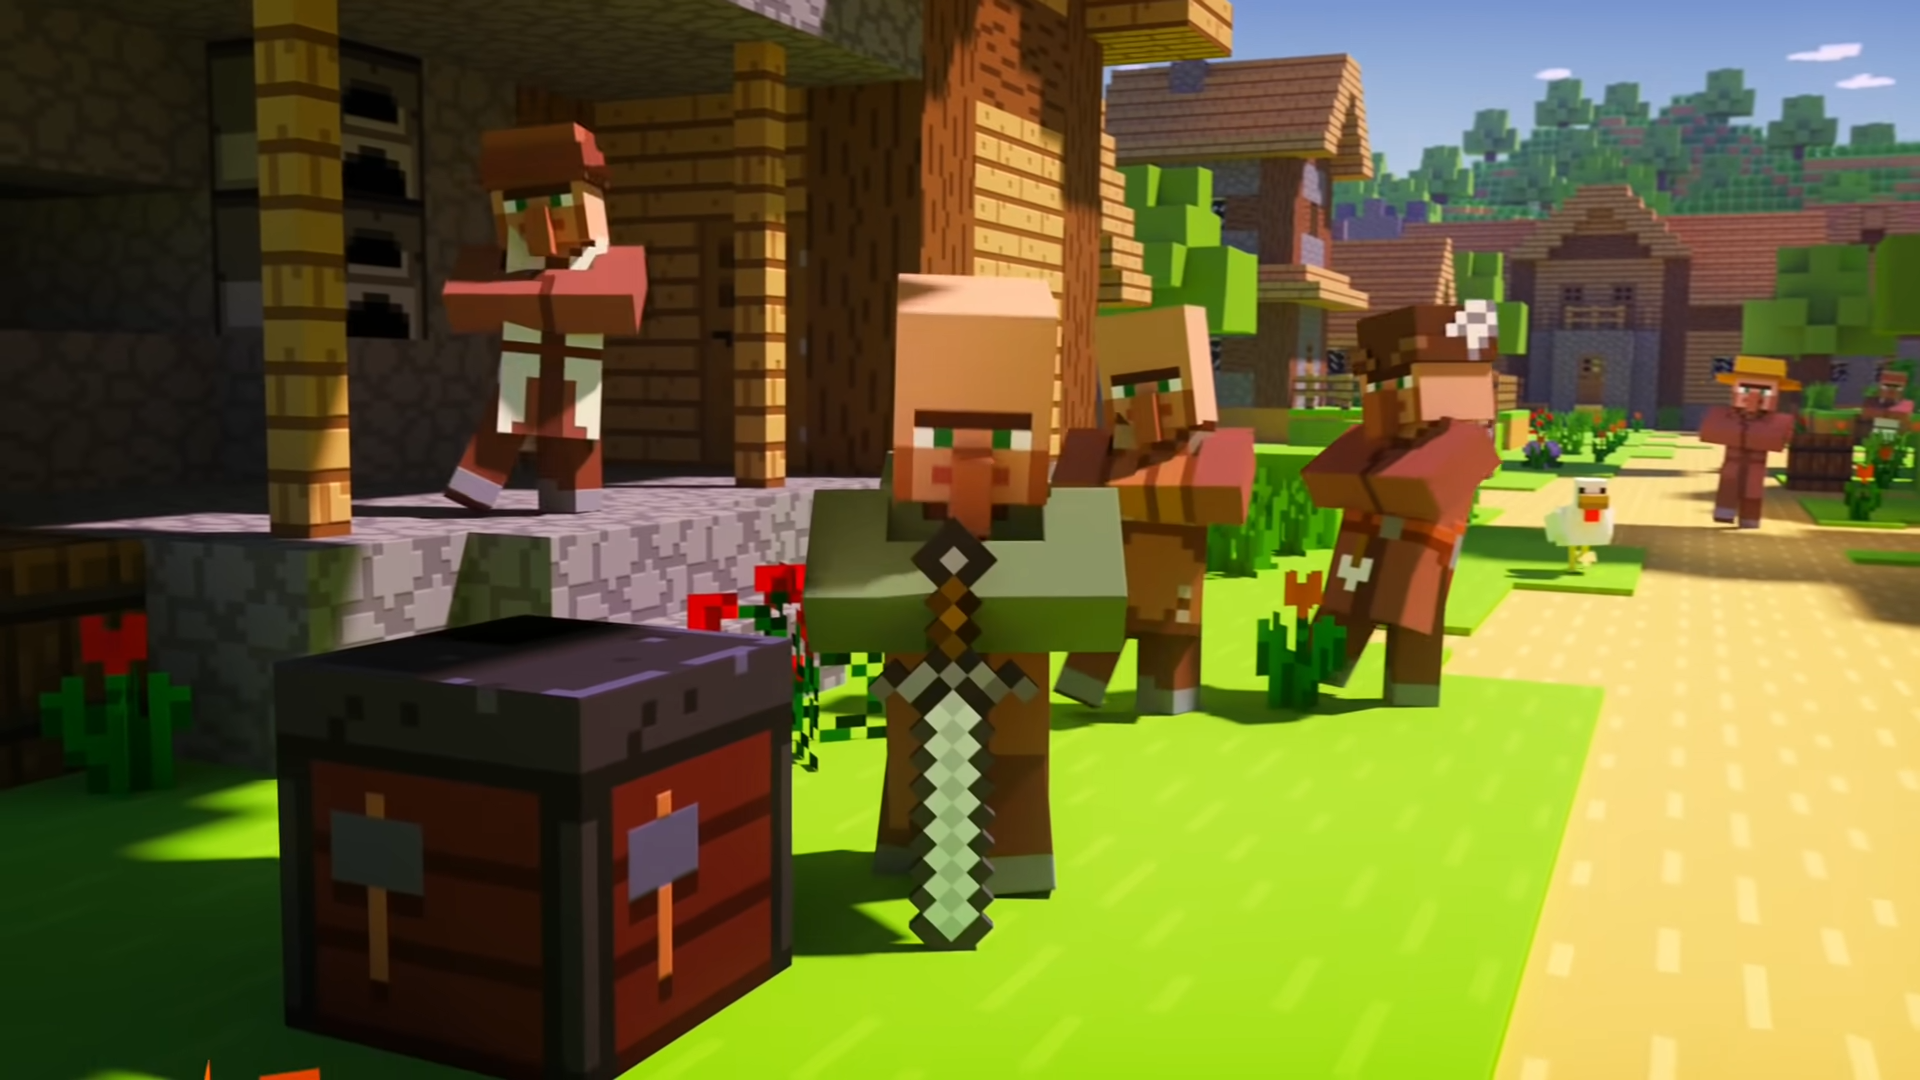 תושבי הכפר עומדים בכפר Minecraft